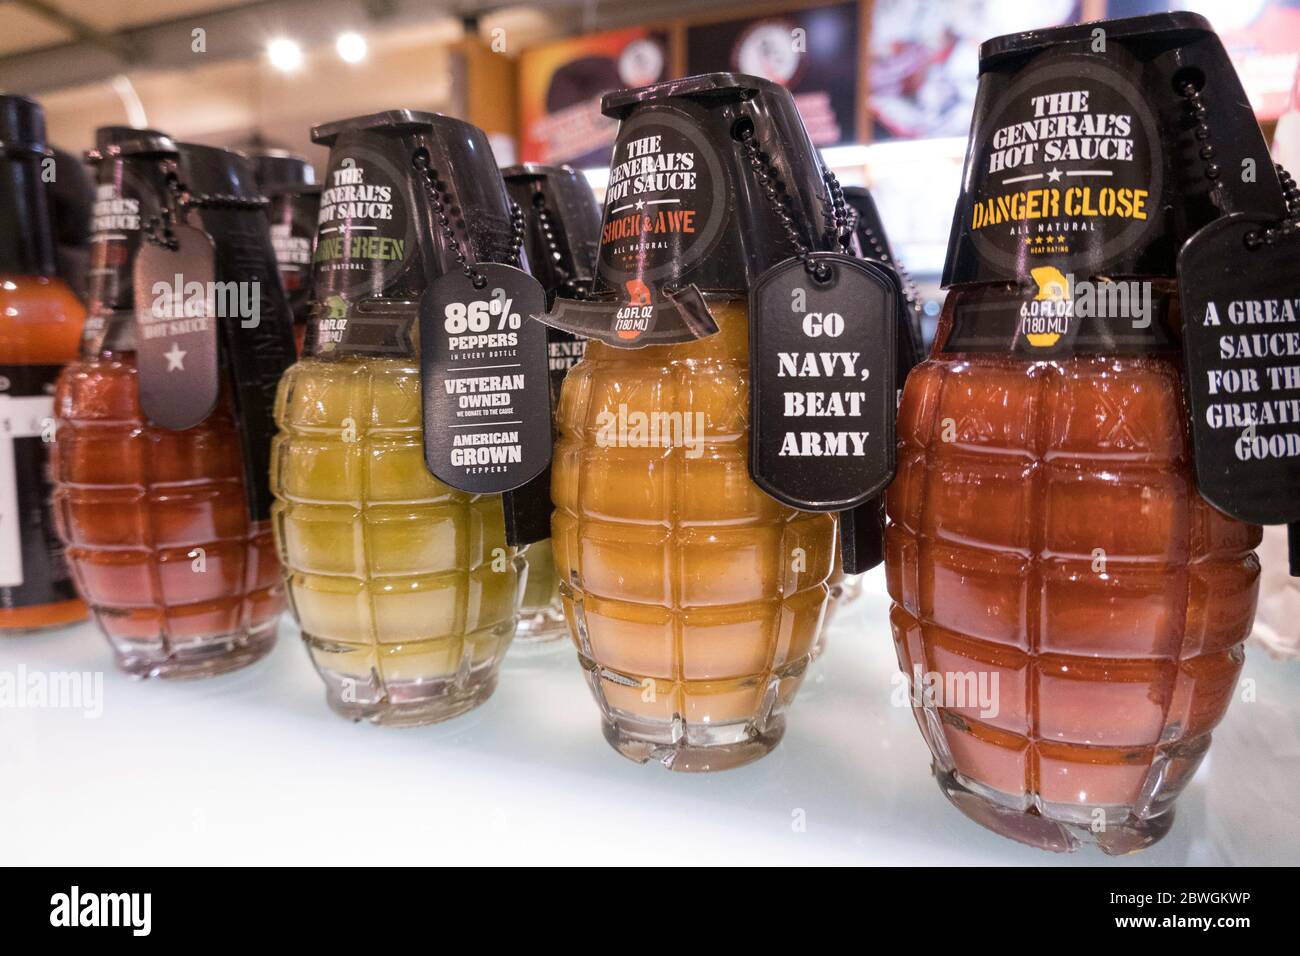 Die General's Hot Sauce ist amerikanische gemacht und zum Verkauf in Grand Central Market Gourmet-Shopping-Destination, NYC, USA Stockfoto